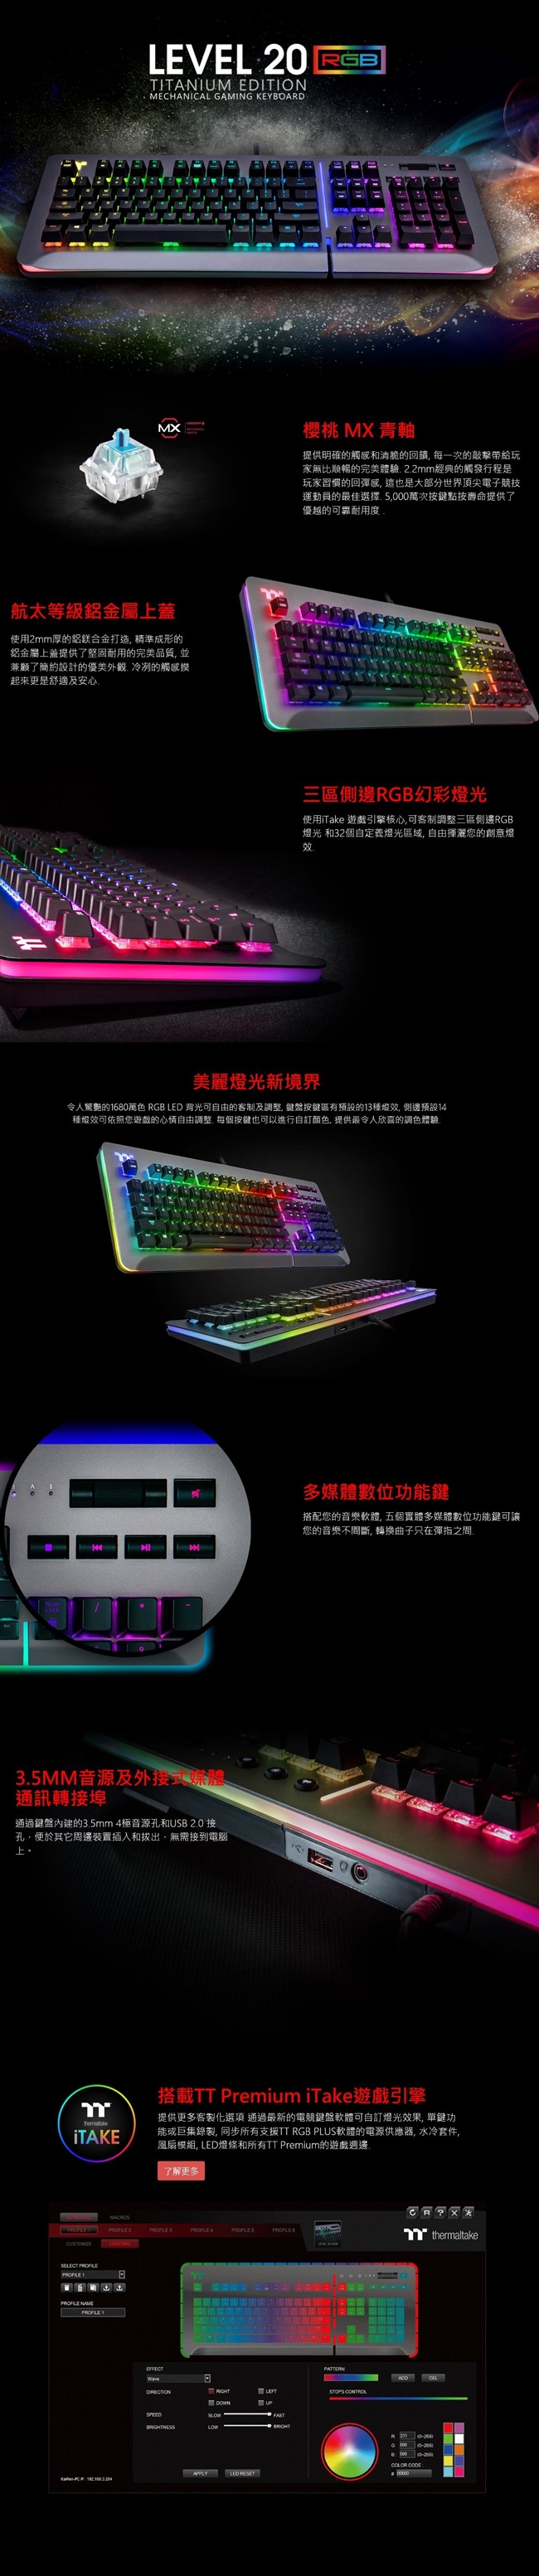 曜越 Level 20 RGB Cherry MX 機械式青軸電競鍵盤鈦灰特仕版